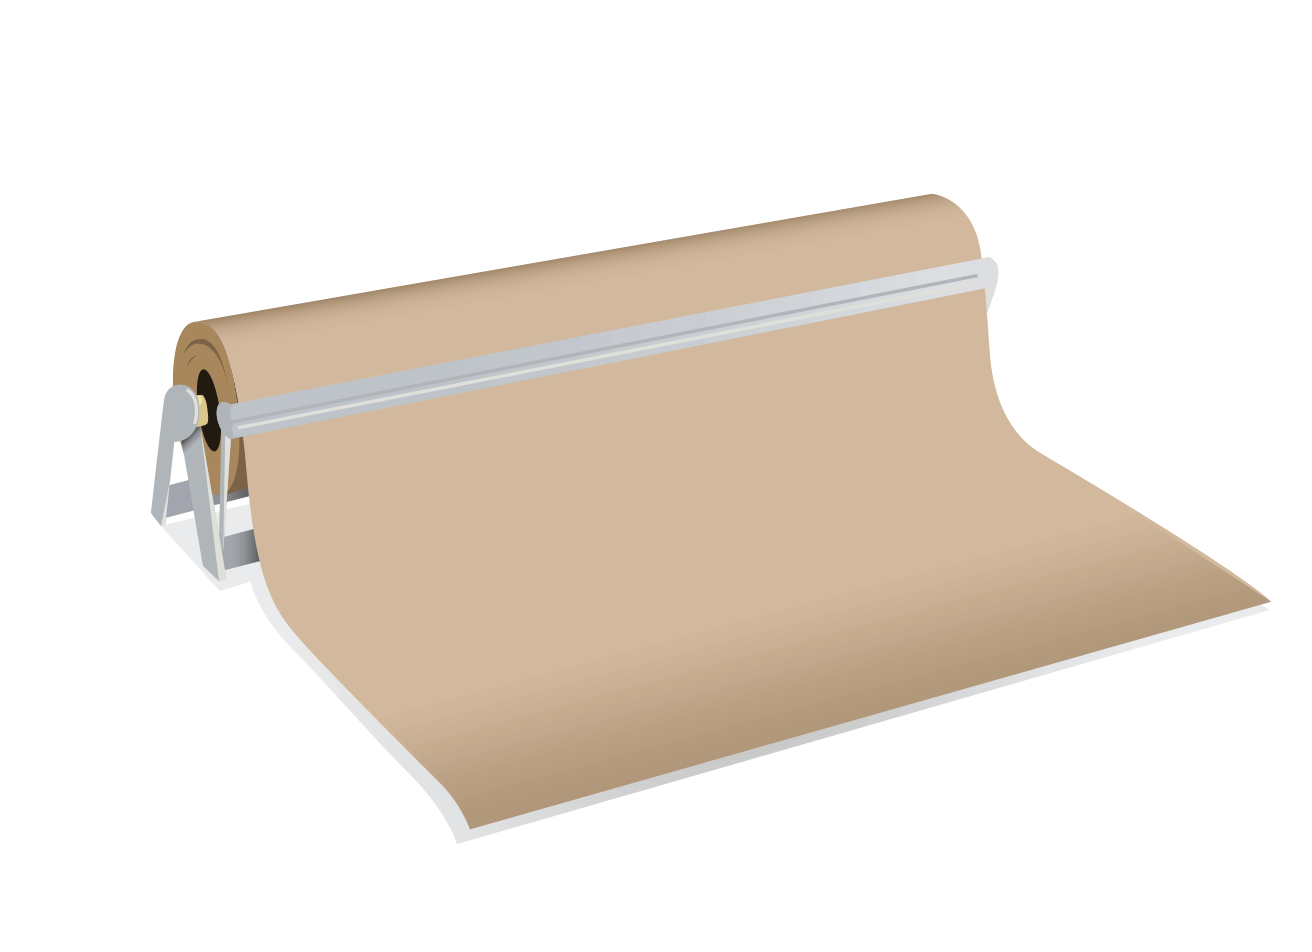 Paper Roll Cutter & Dispenser - 24